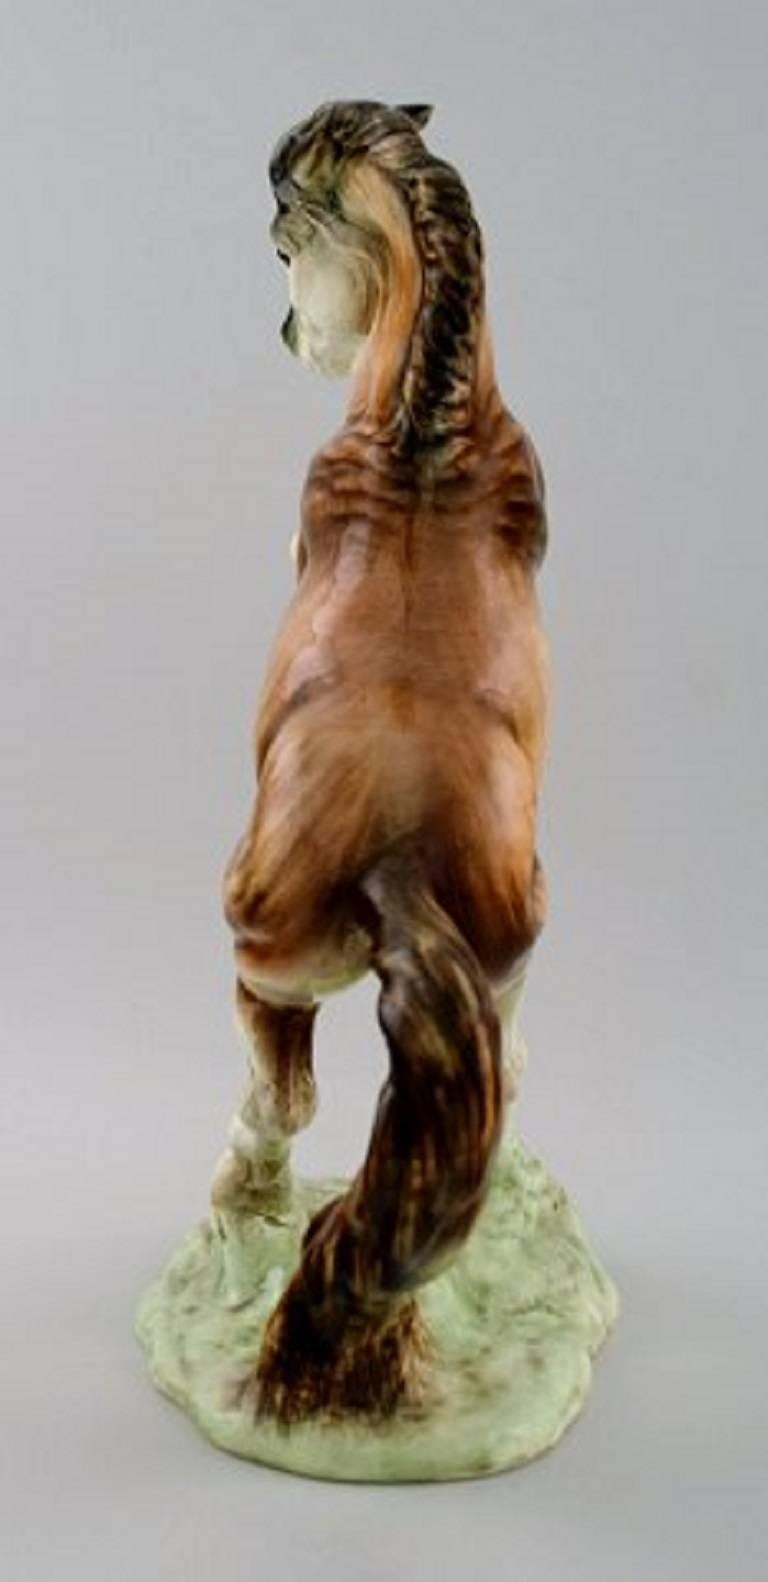 Grande figurine Goldschneider en porcelaine, cheval cabré.

Dimensions : 32 x 22 cm.

En parfait état.

Marqué : Goldschneider, fabriqué en Angleterre.